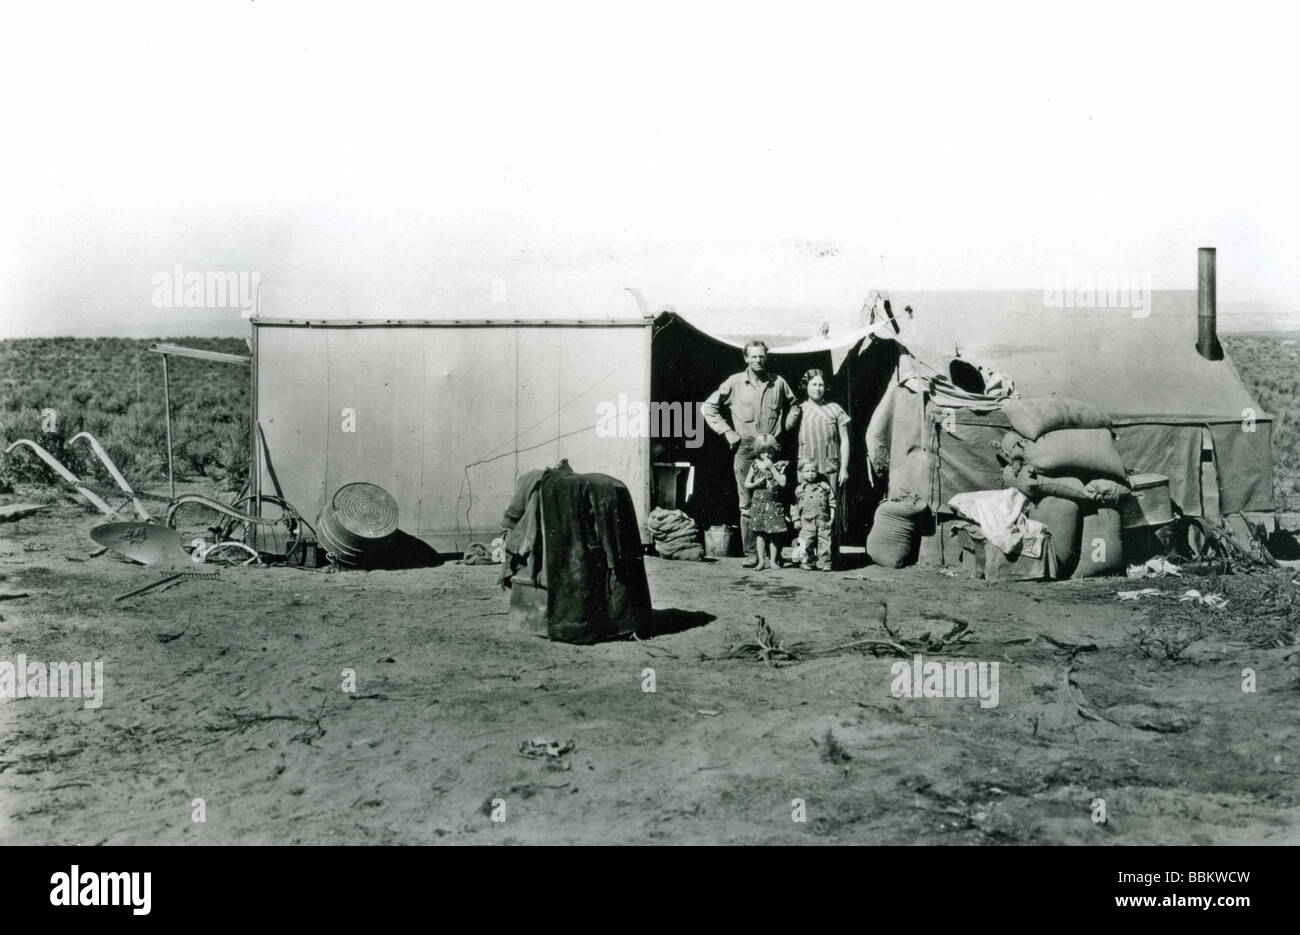 DIE WELTWIRTSCHAFTSKRISE A Pächter Familie lebt in einem Zelt in einem amerikanischen Zustand von Dustbowl Bedingungen in den 1930er Jahren getroffen Stockfoto